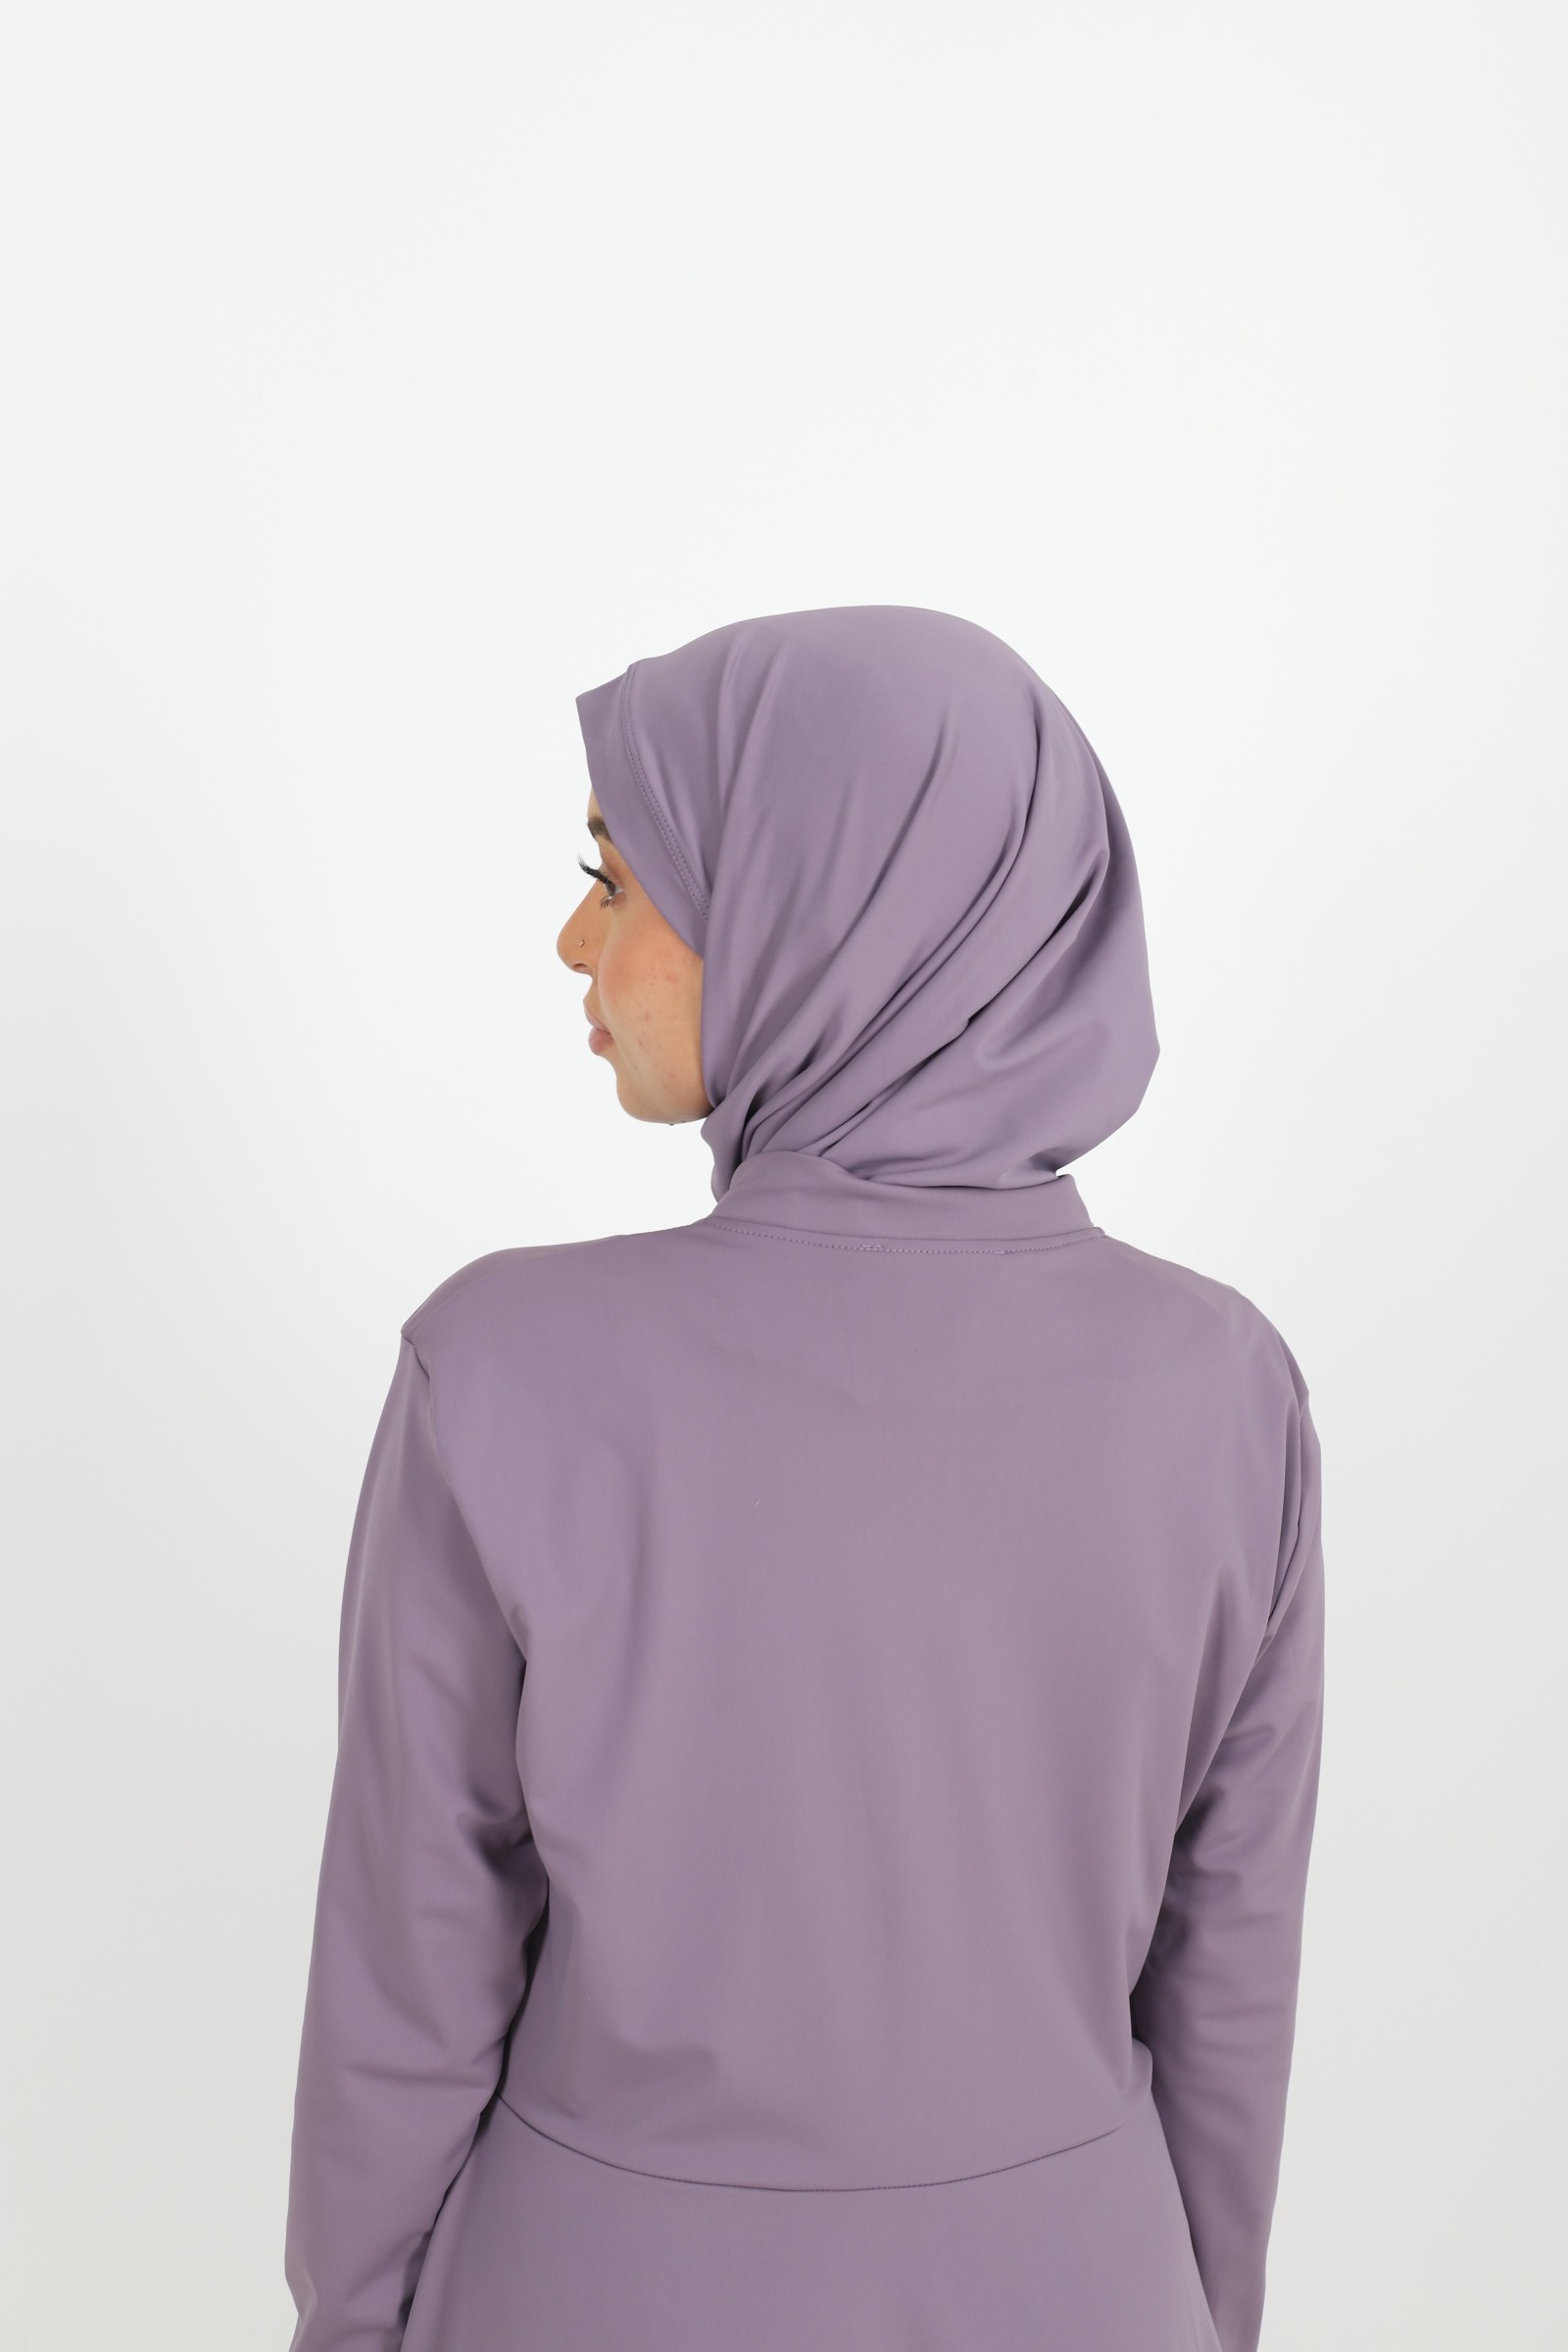 Burkini chic mastour pour femme musulmane maillot de bain islamique